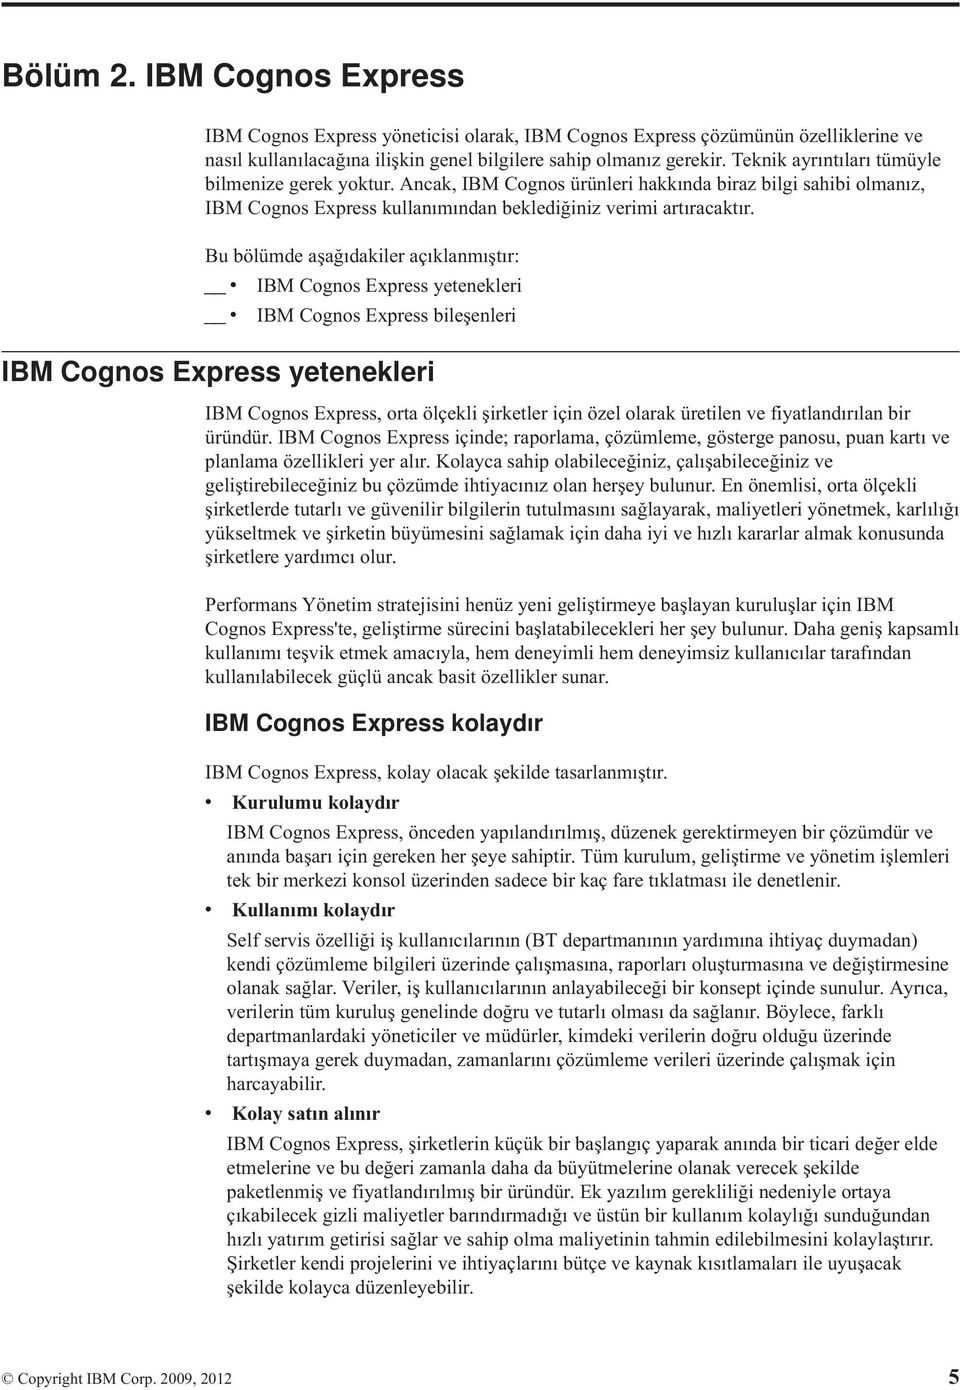 Bu bölümde aşağıdakiler açıklanmıştır: v IBM Cognos Express yetenekleri v IBM Cognos Express bileşenleri IBM Cognos Express yetenekleri IBM Cognos Express, orta ölçekli şirketler için özel olarak